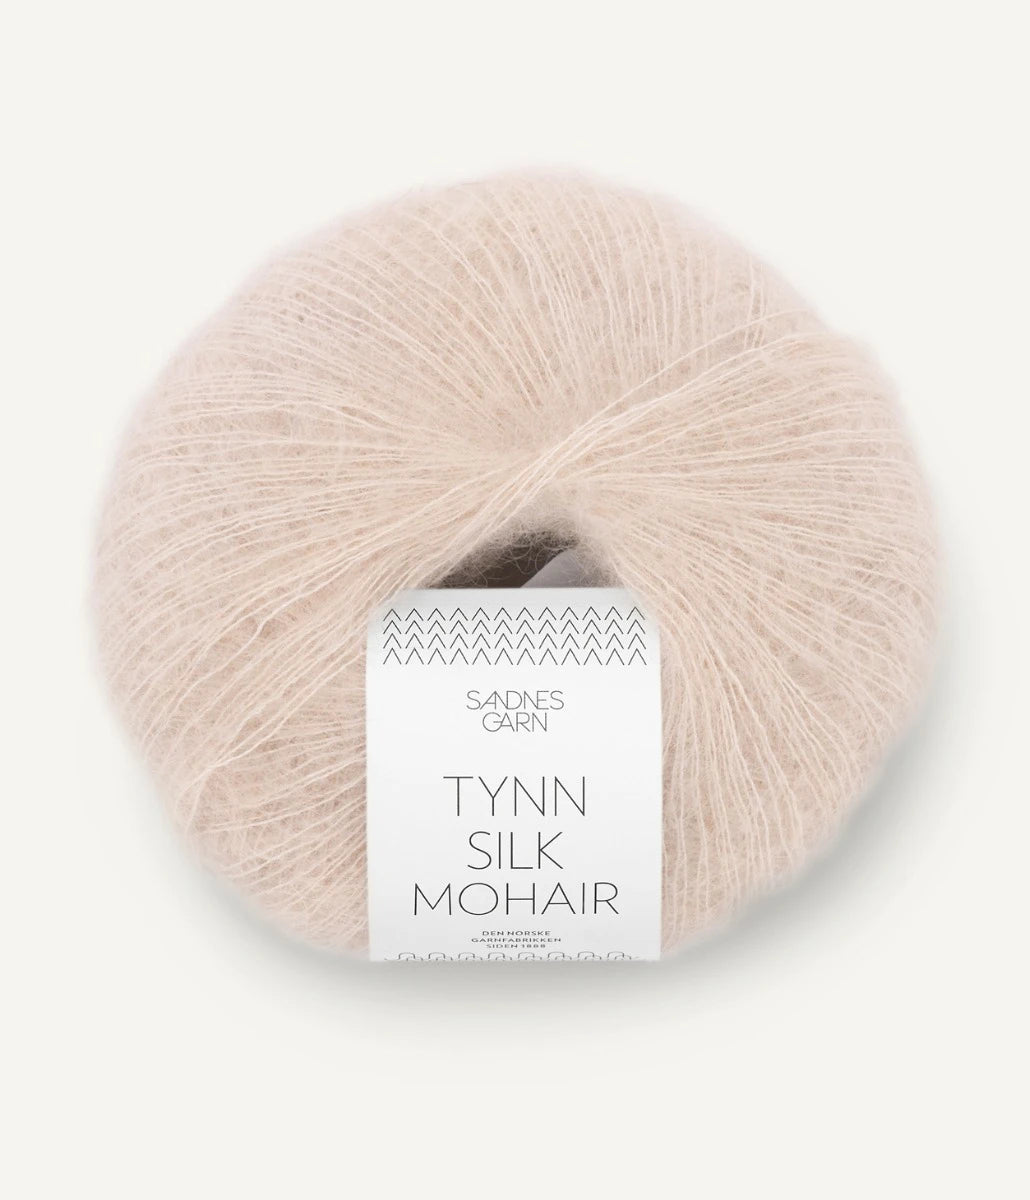 Kuvassa on Sandnes Garn Tynn Silk Mohair -lanka (yarn) värissä Marsipan.